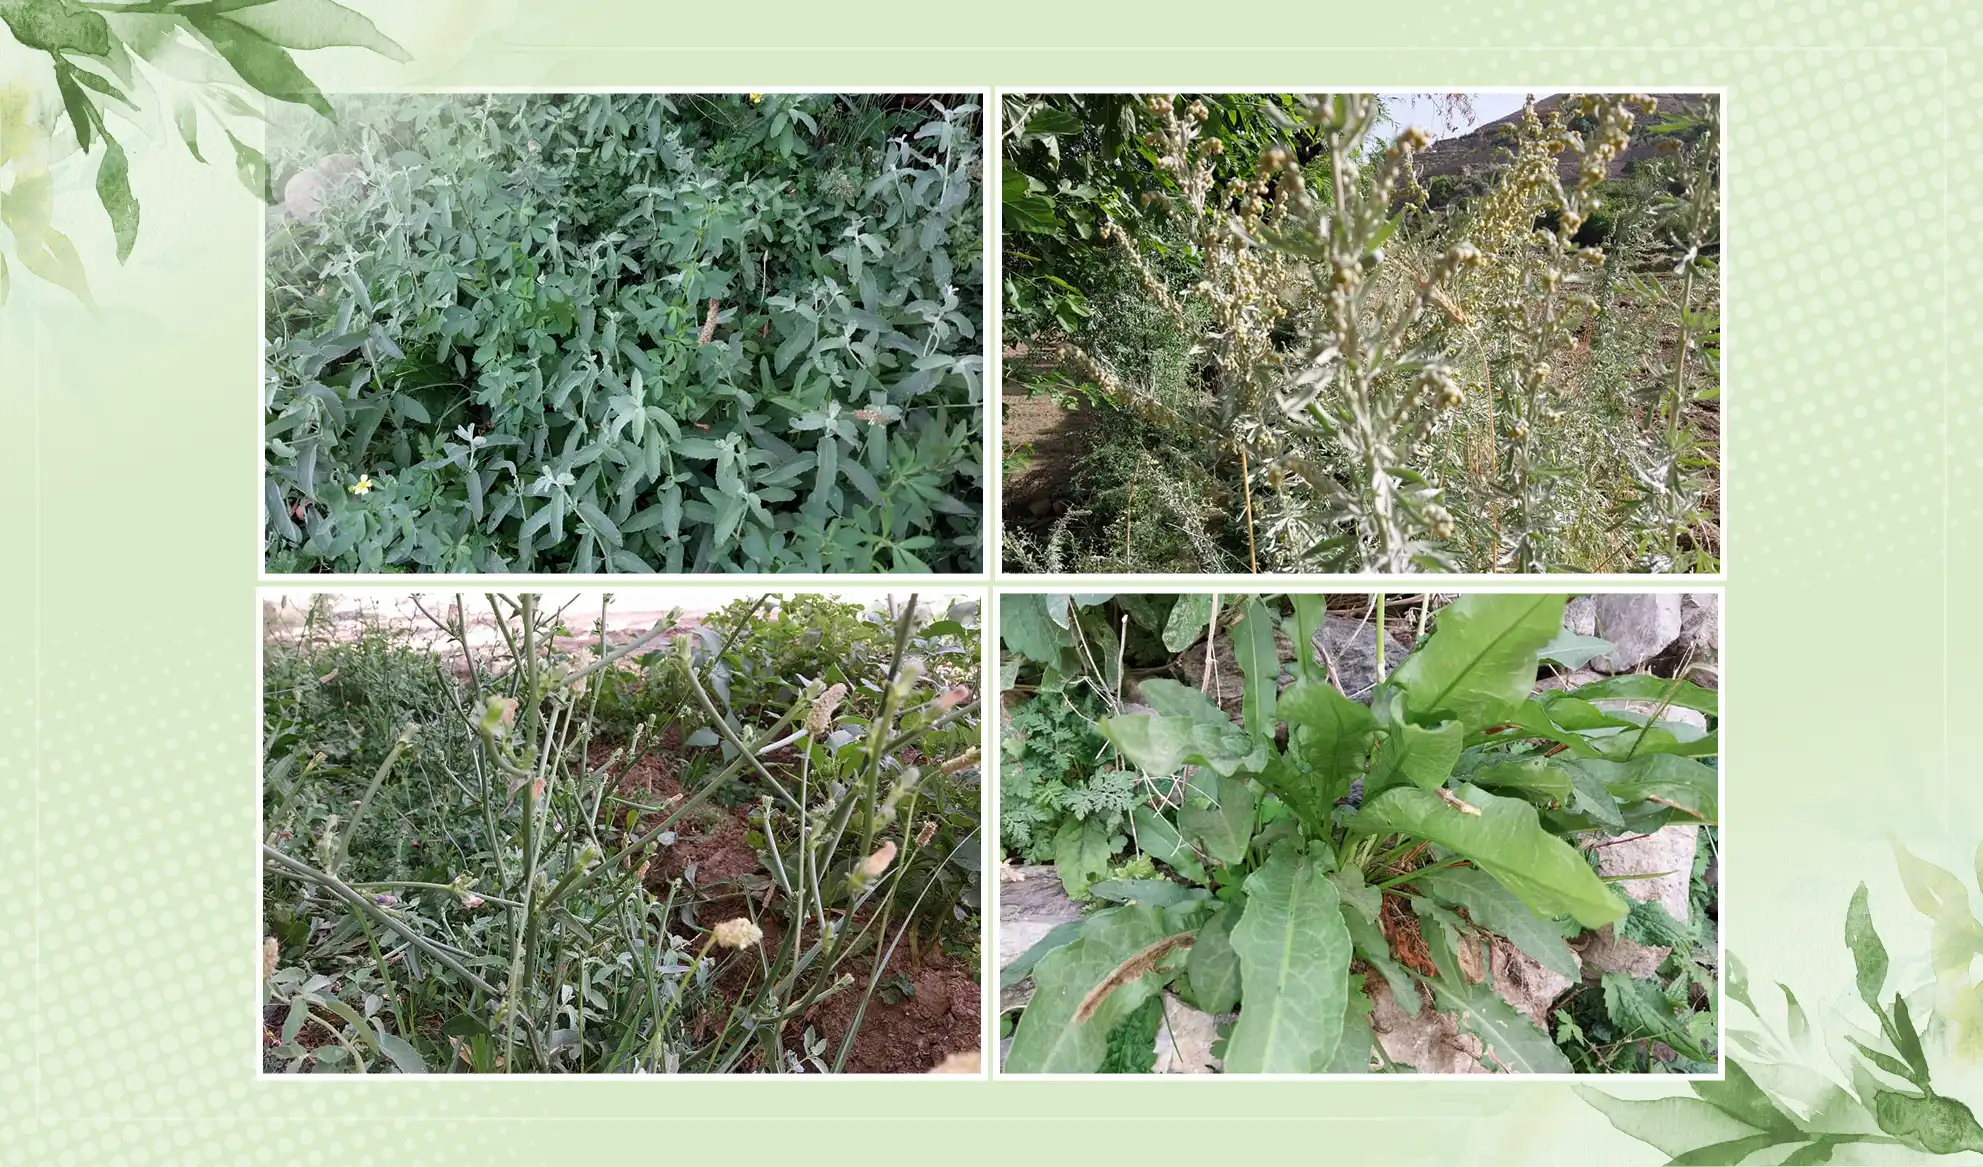 39 varieties of natural medical herbs identified in Panjsher